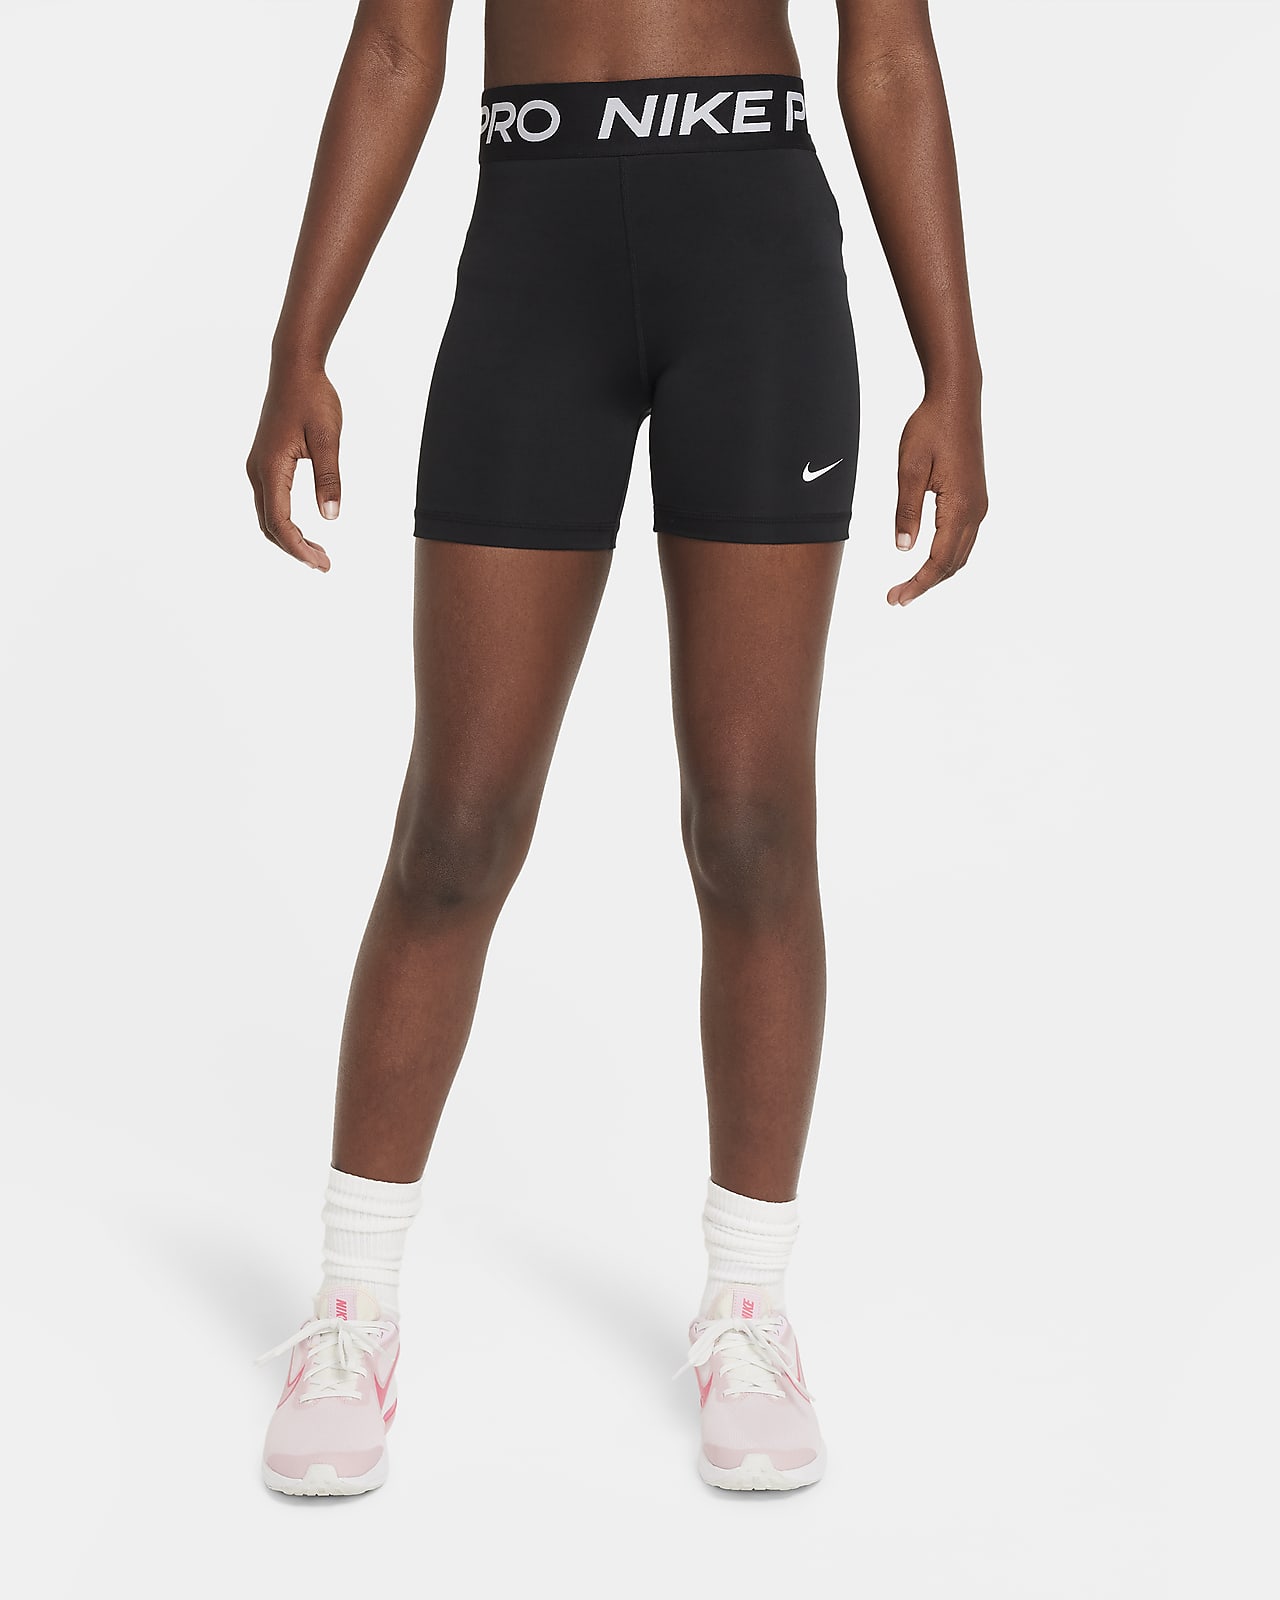 กางเกงขาสั้น 3 นิ้วเด็กโต Nike Pro (หญิง)